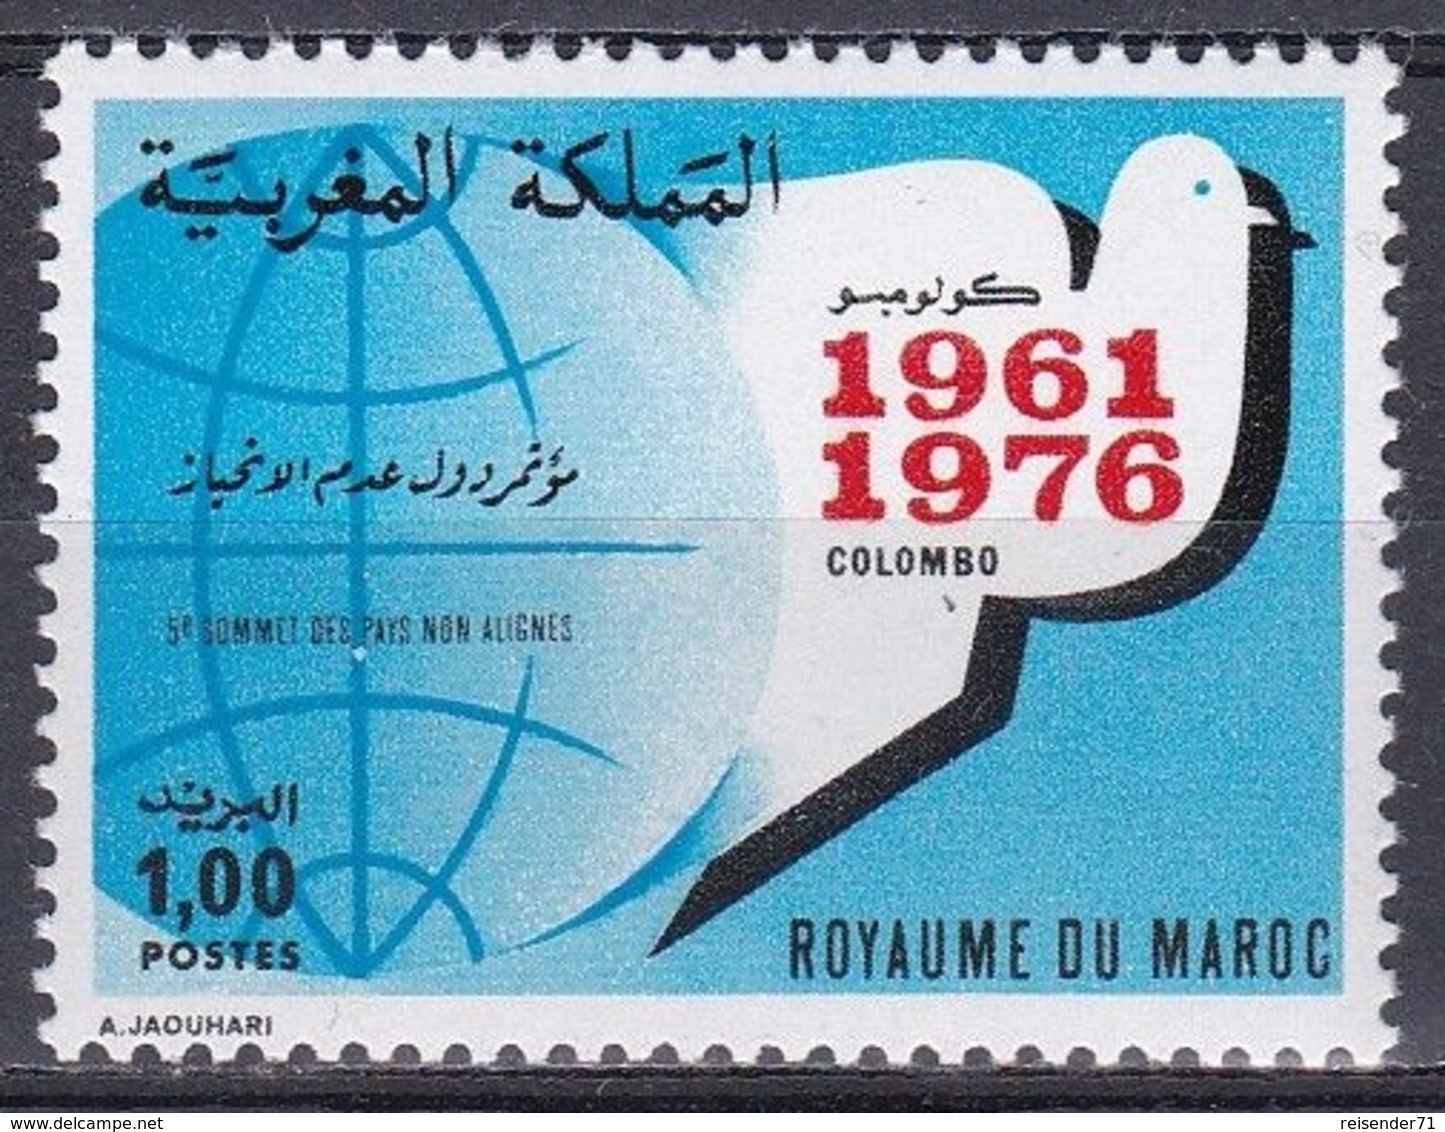 Marokko Morocco 1976 Politik Blockfreie Staaten Non-aligned Countries Friedenstaube Tauben Doves, Mi. 857 ** - Marokko (1956-...)